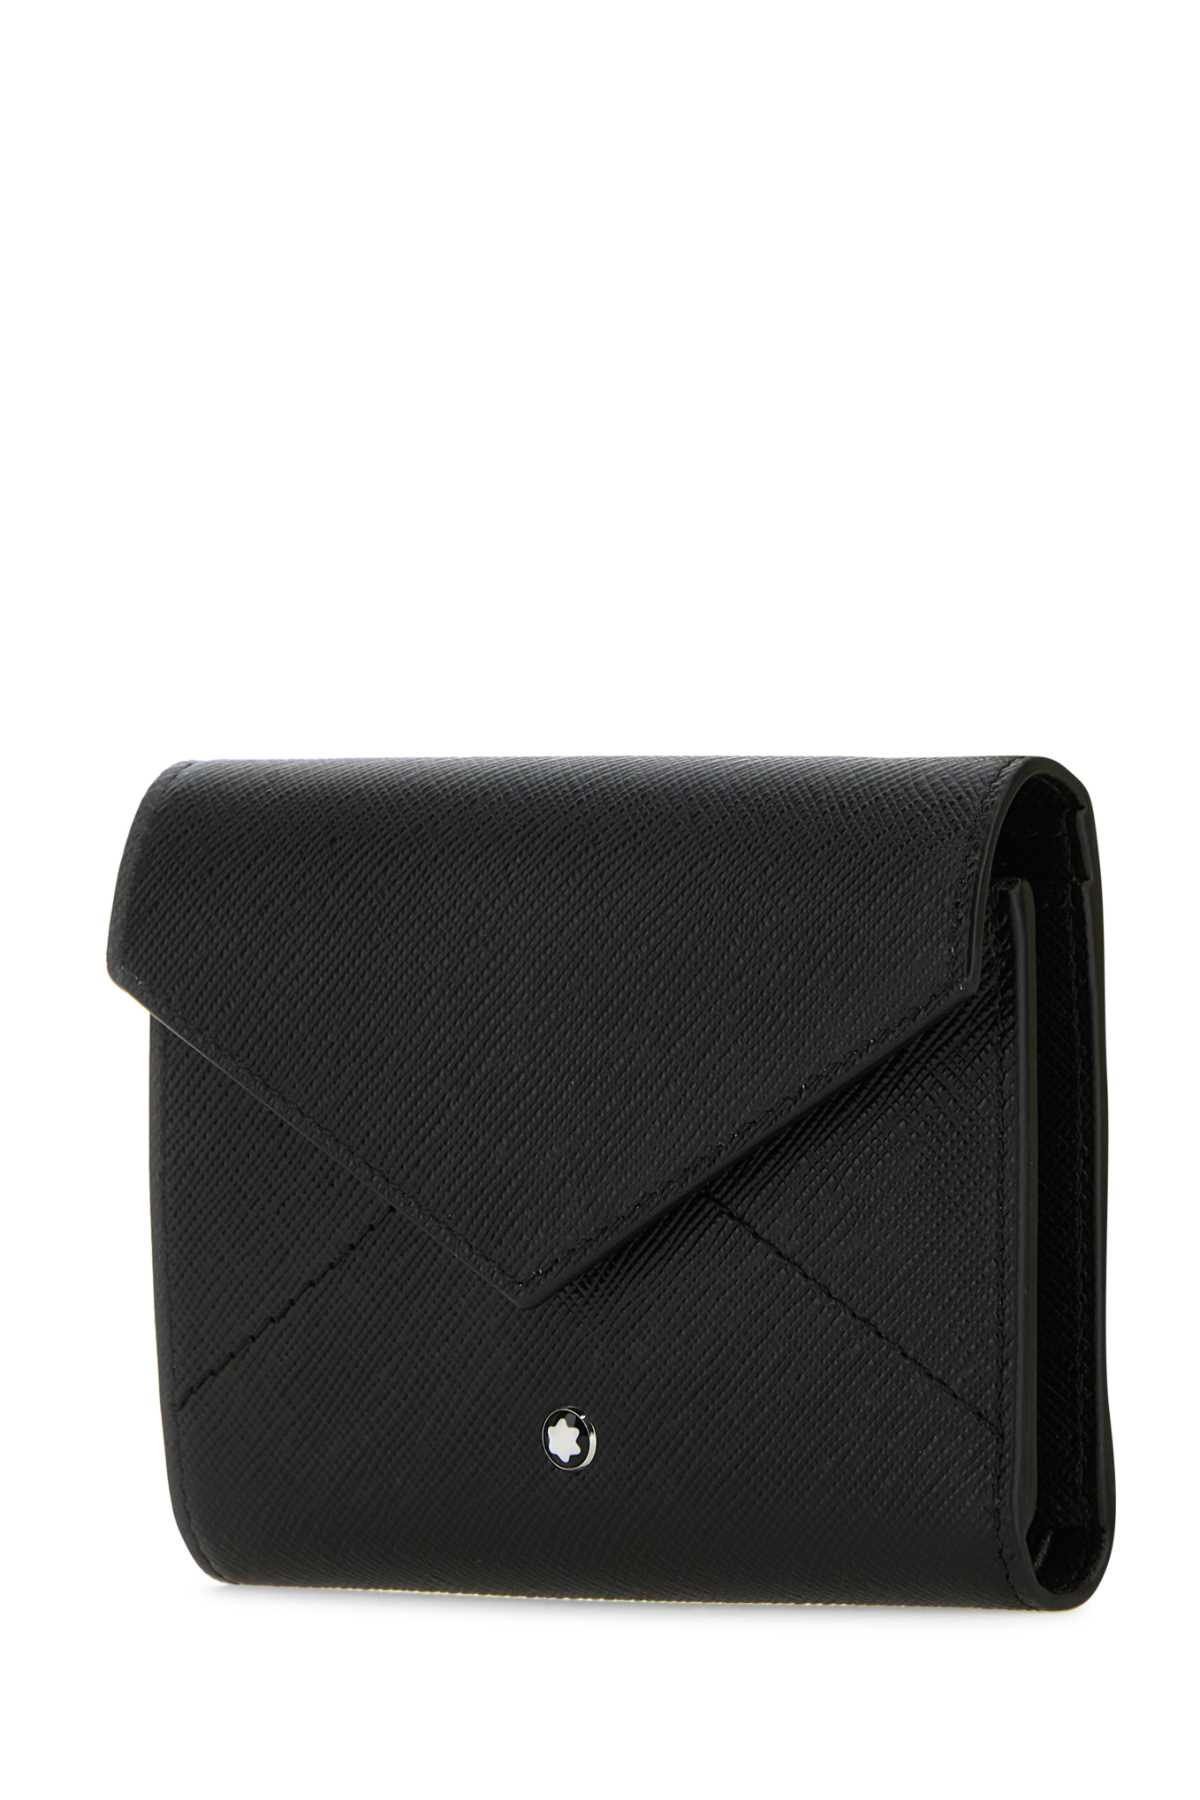 Shop Montblanc Black Leather Trio Sartorial Wallet